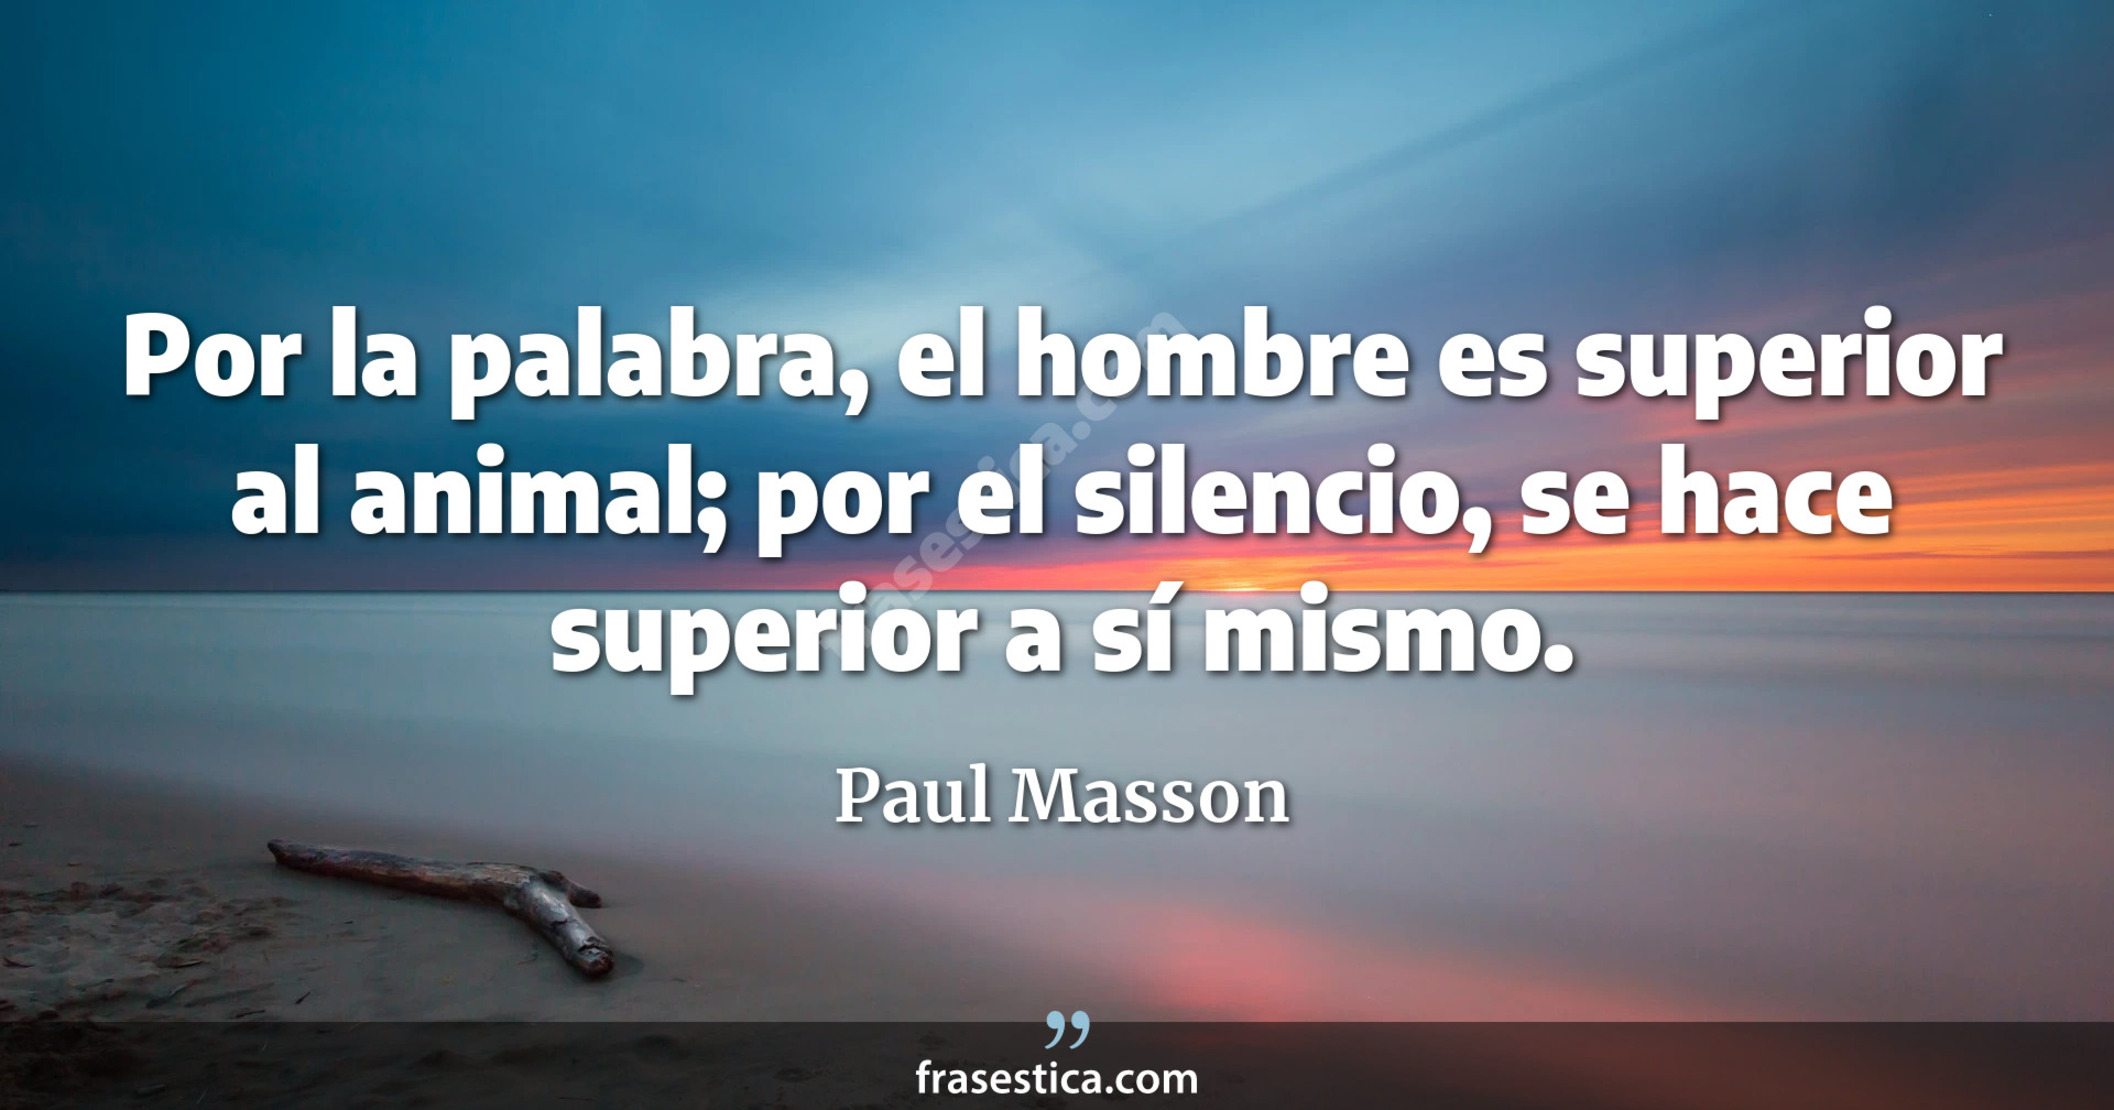 Por la palabra, el hombre es superior al animal; por el silencio, se hace superior a sí mismo. - Paul Masson